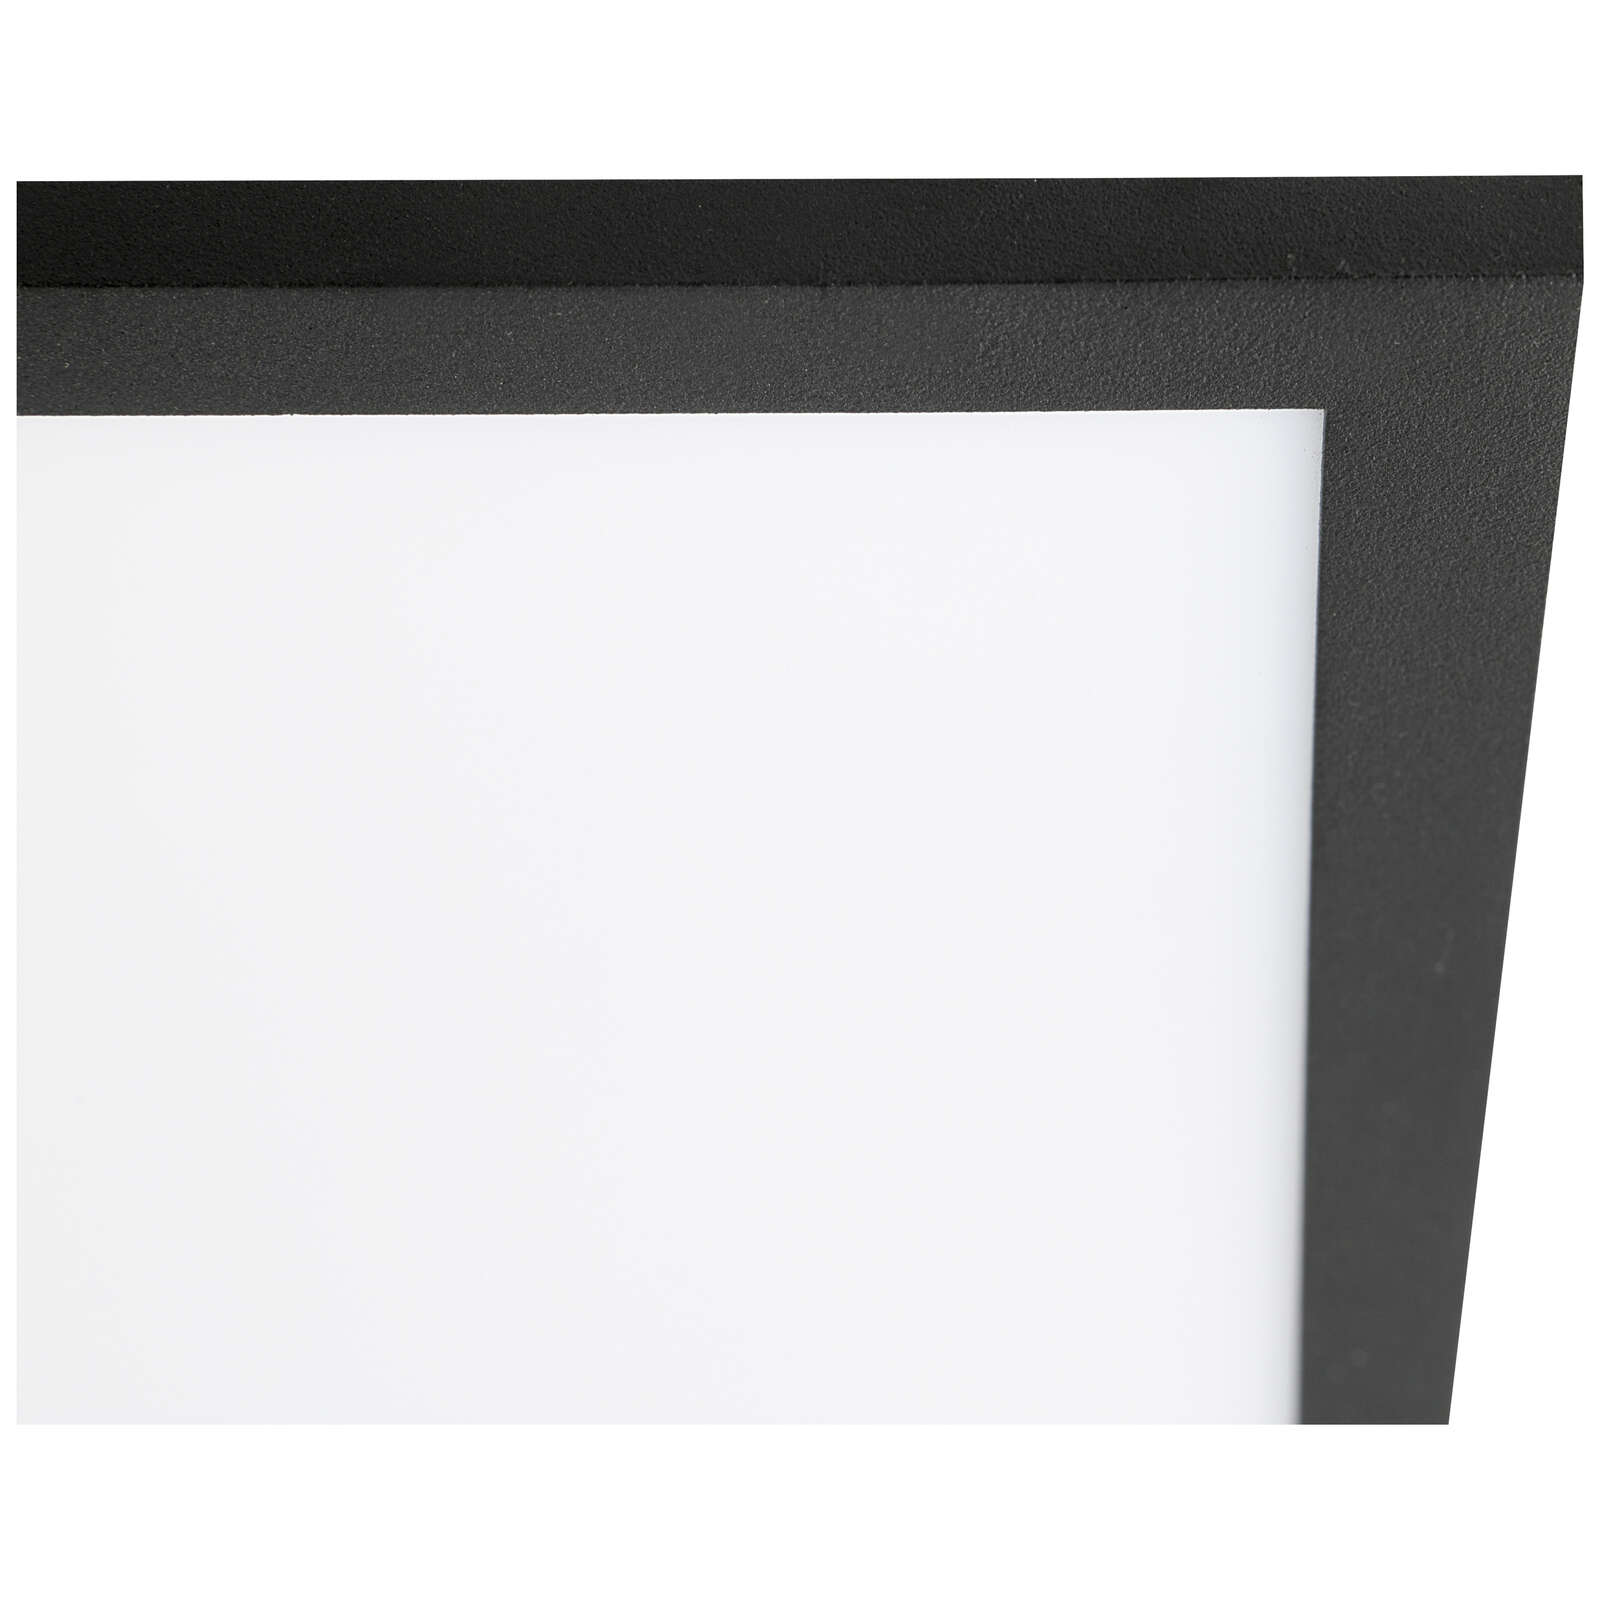             Plastic ceiling light - Constantin 9 - Black
        